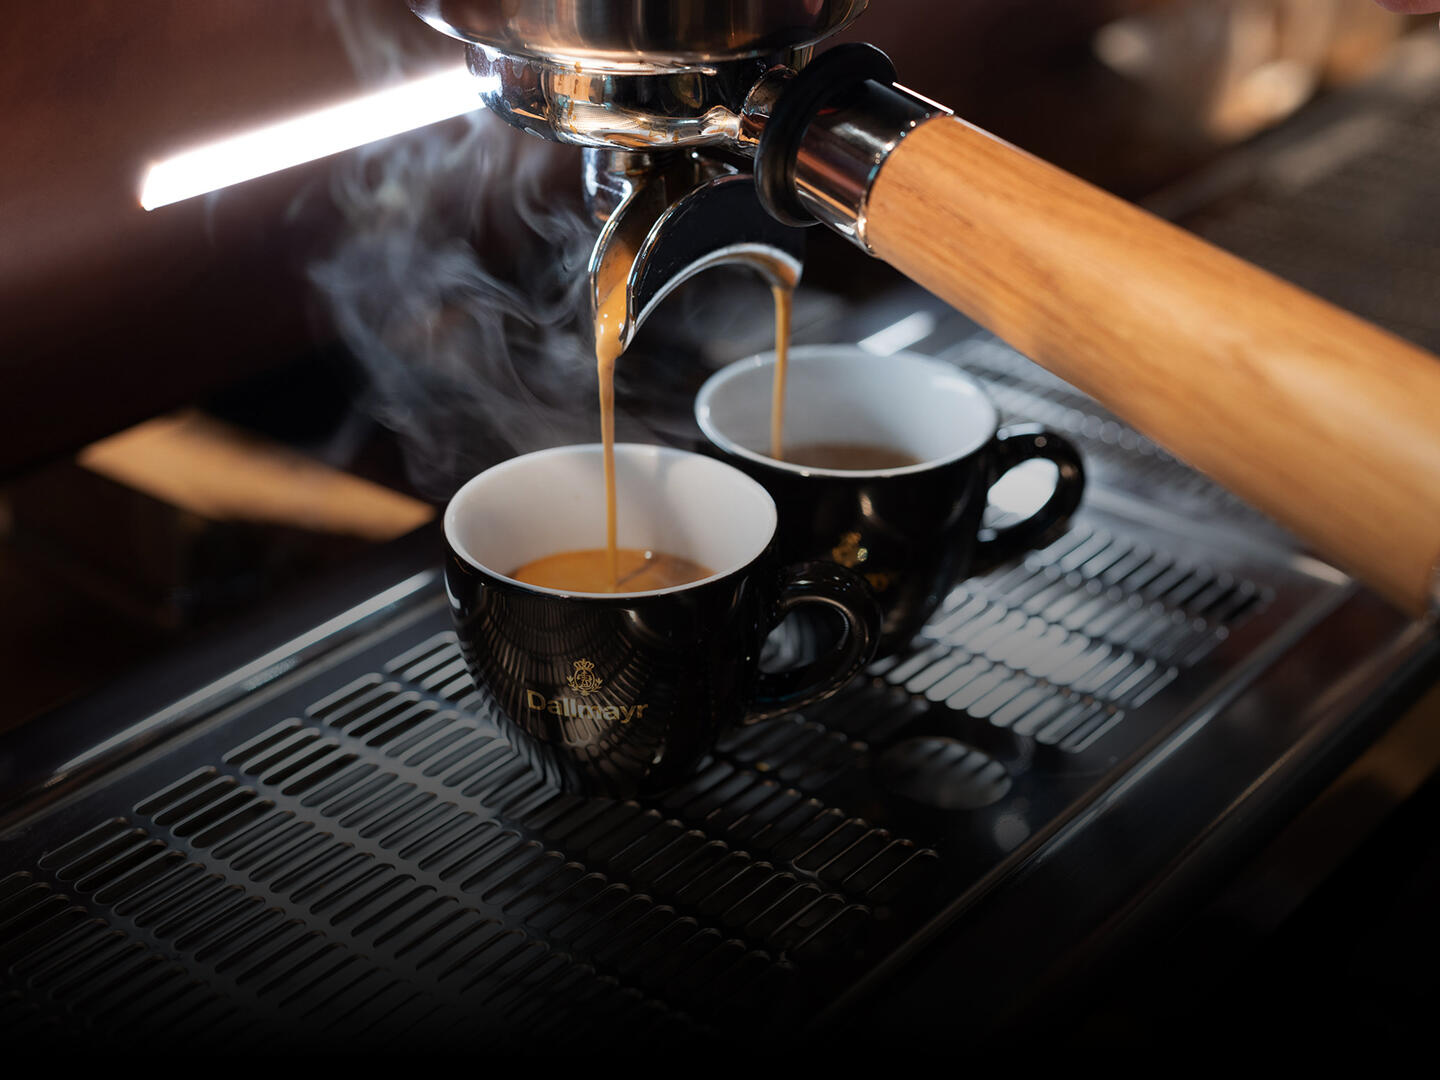 Dallmayr espresso runs from the portafilter machine into two espresso cups